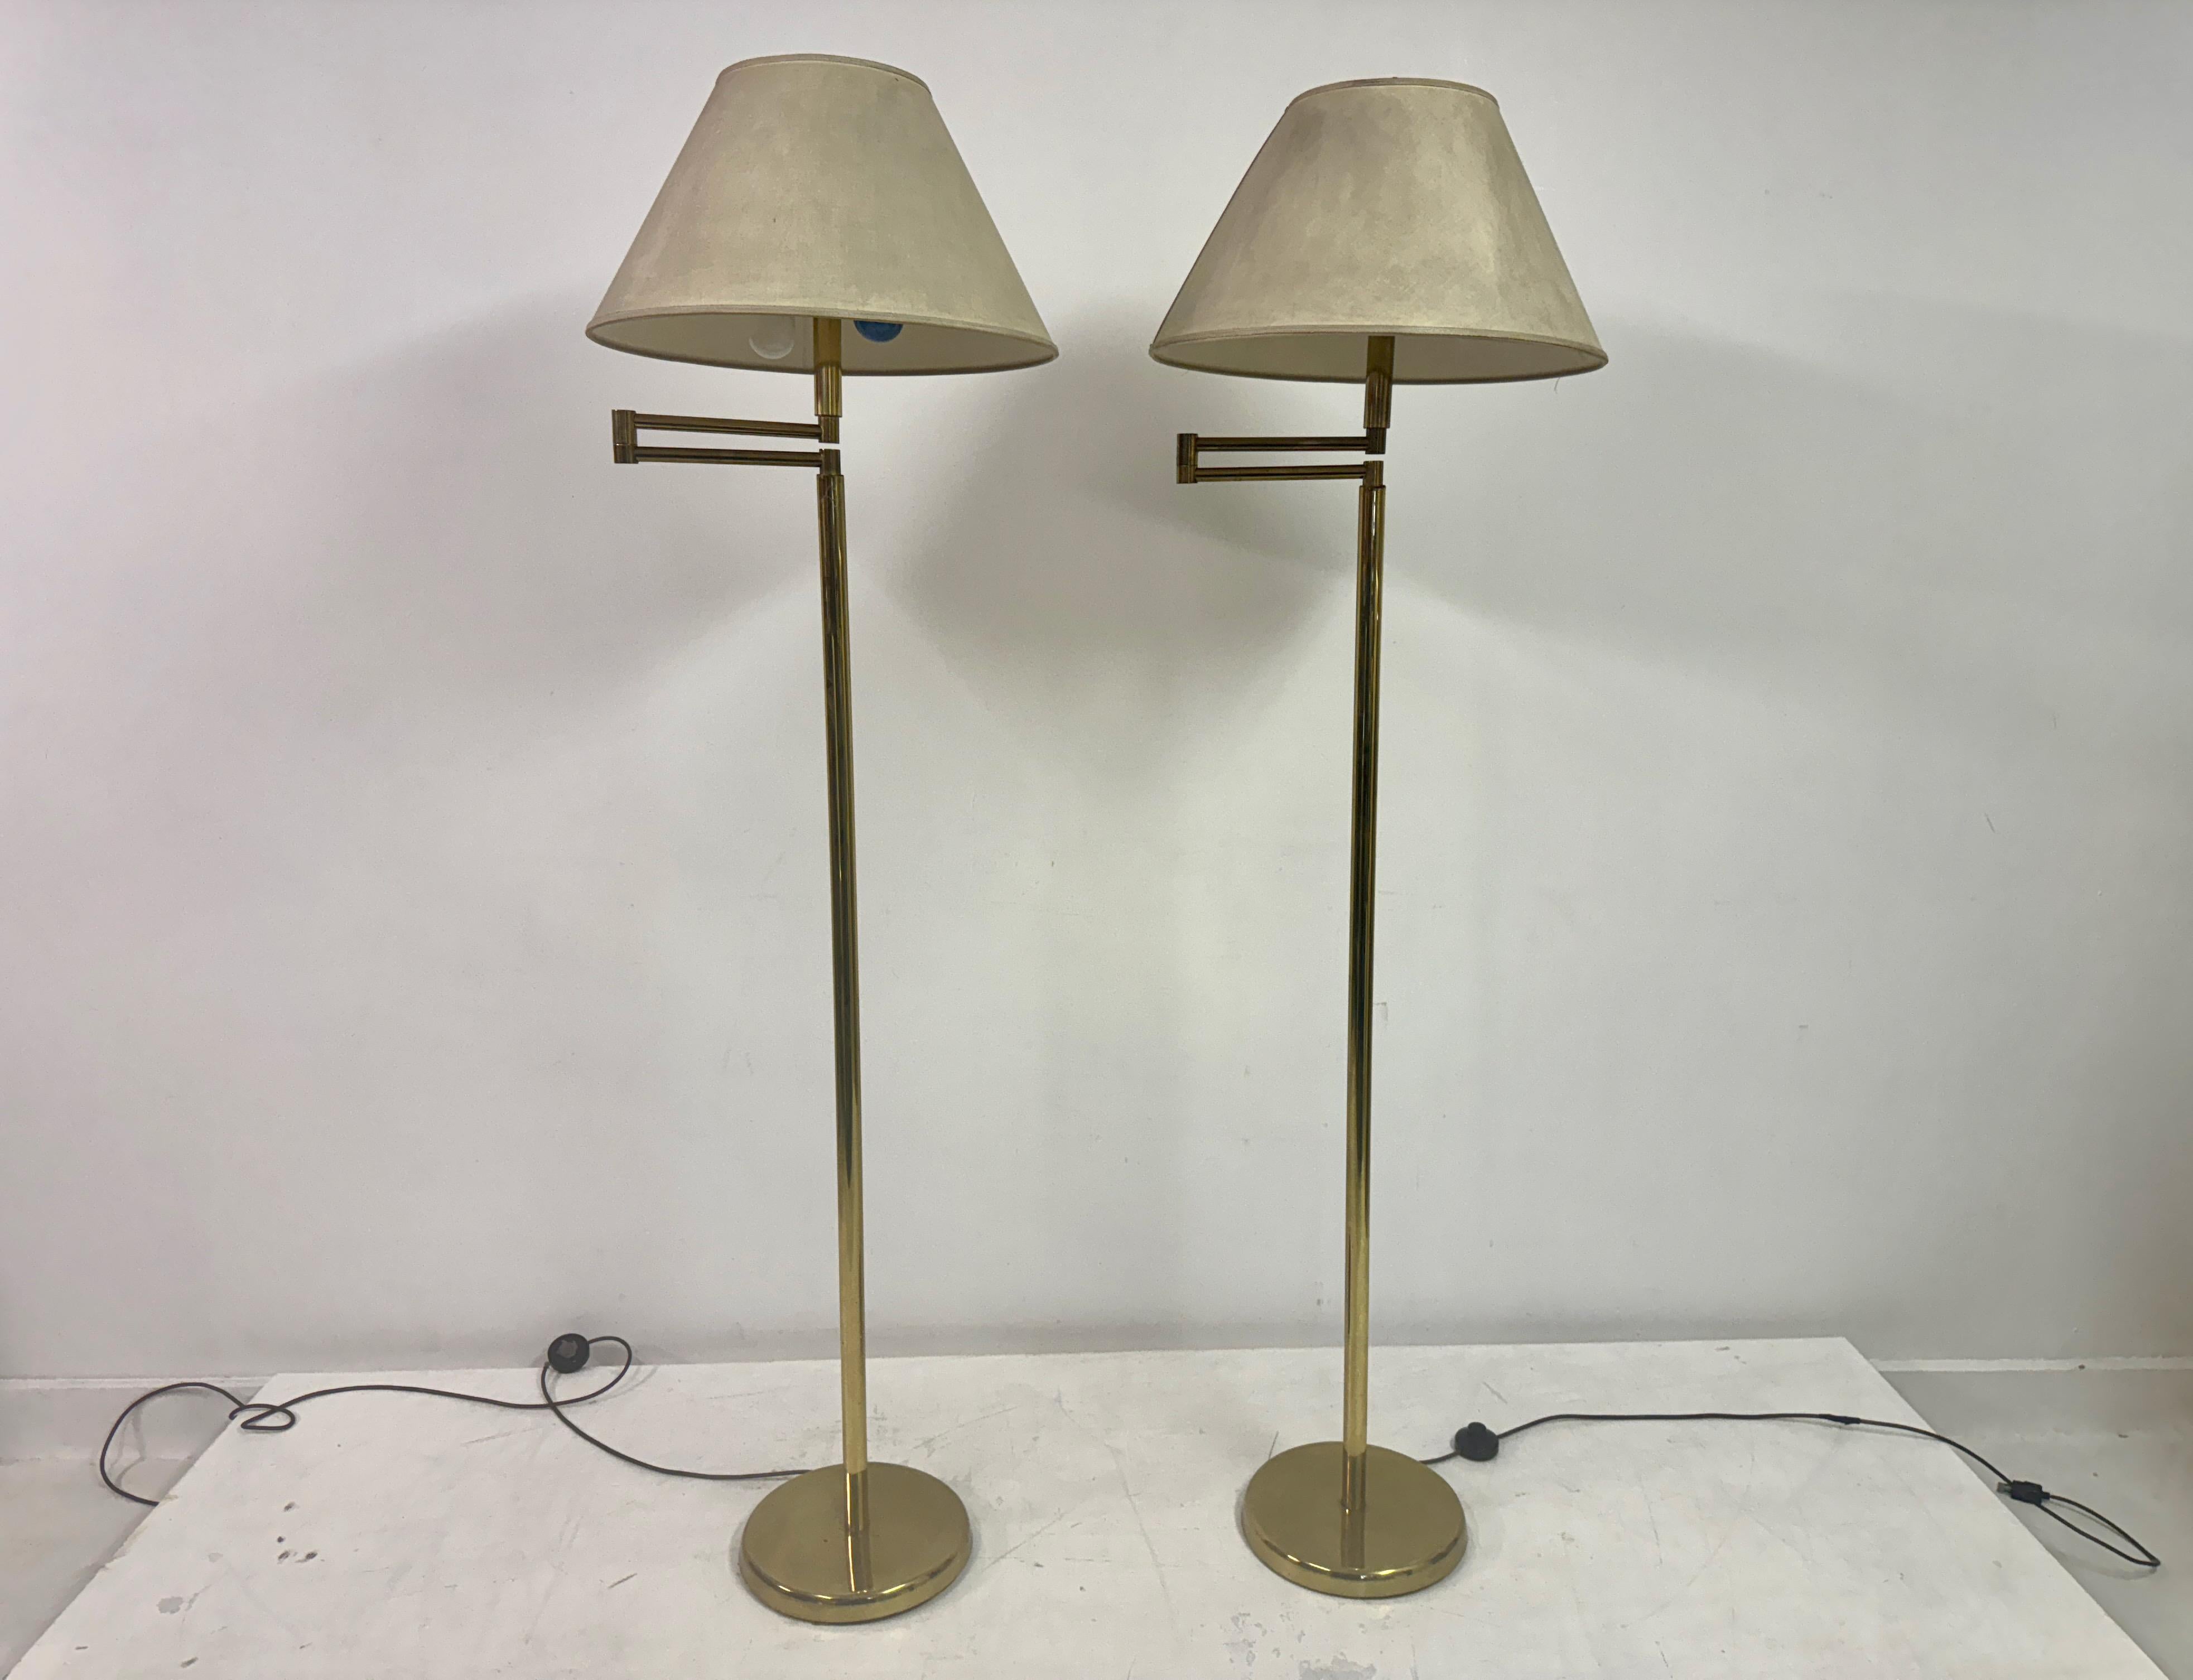 Paar Stehlampen

Schwenkarme

Messing

Originalfarbtöne, aber verschmutzt

Die Abmessungen sind ohne Schirme

Italien 1970er Jahre